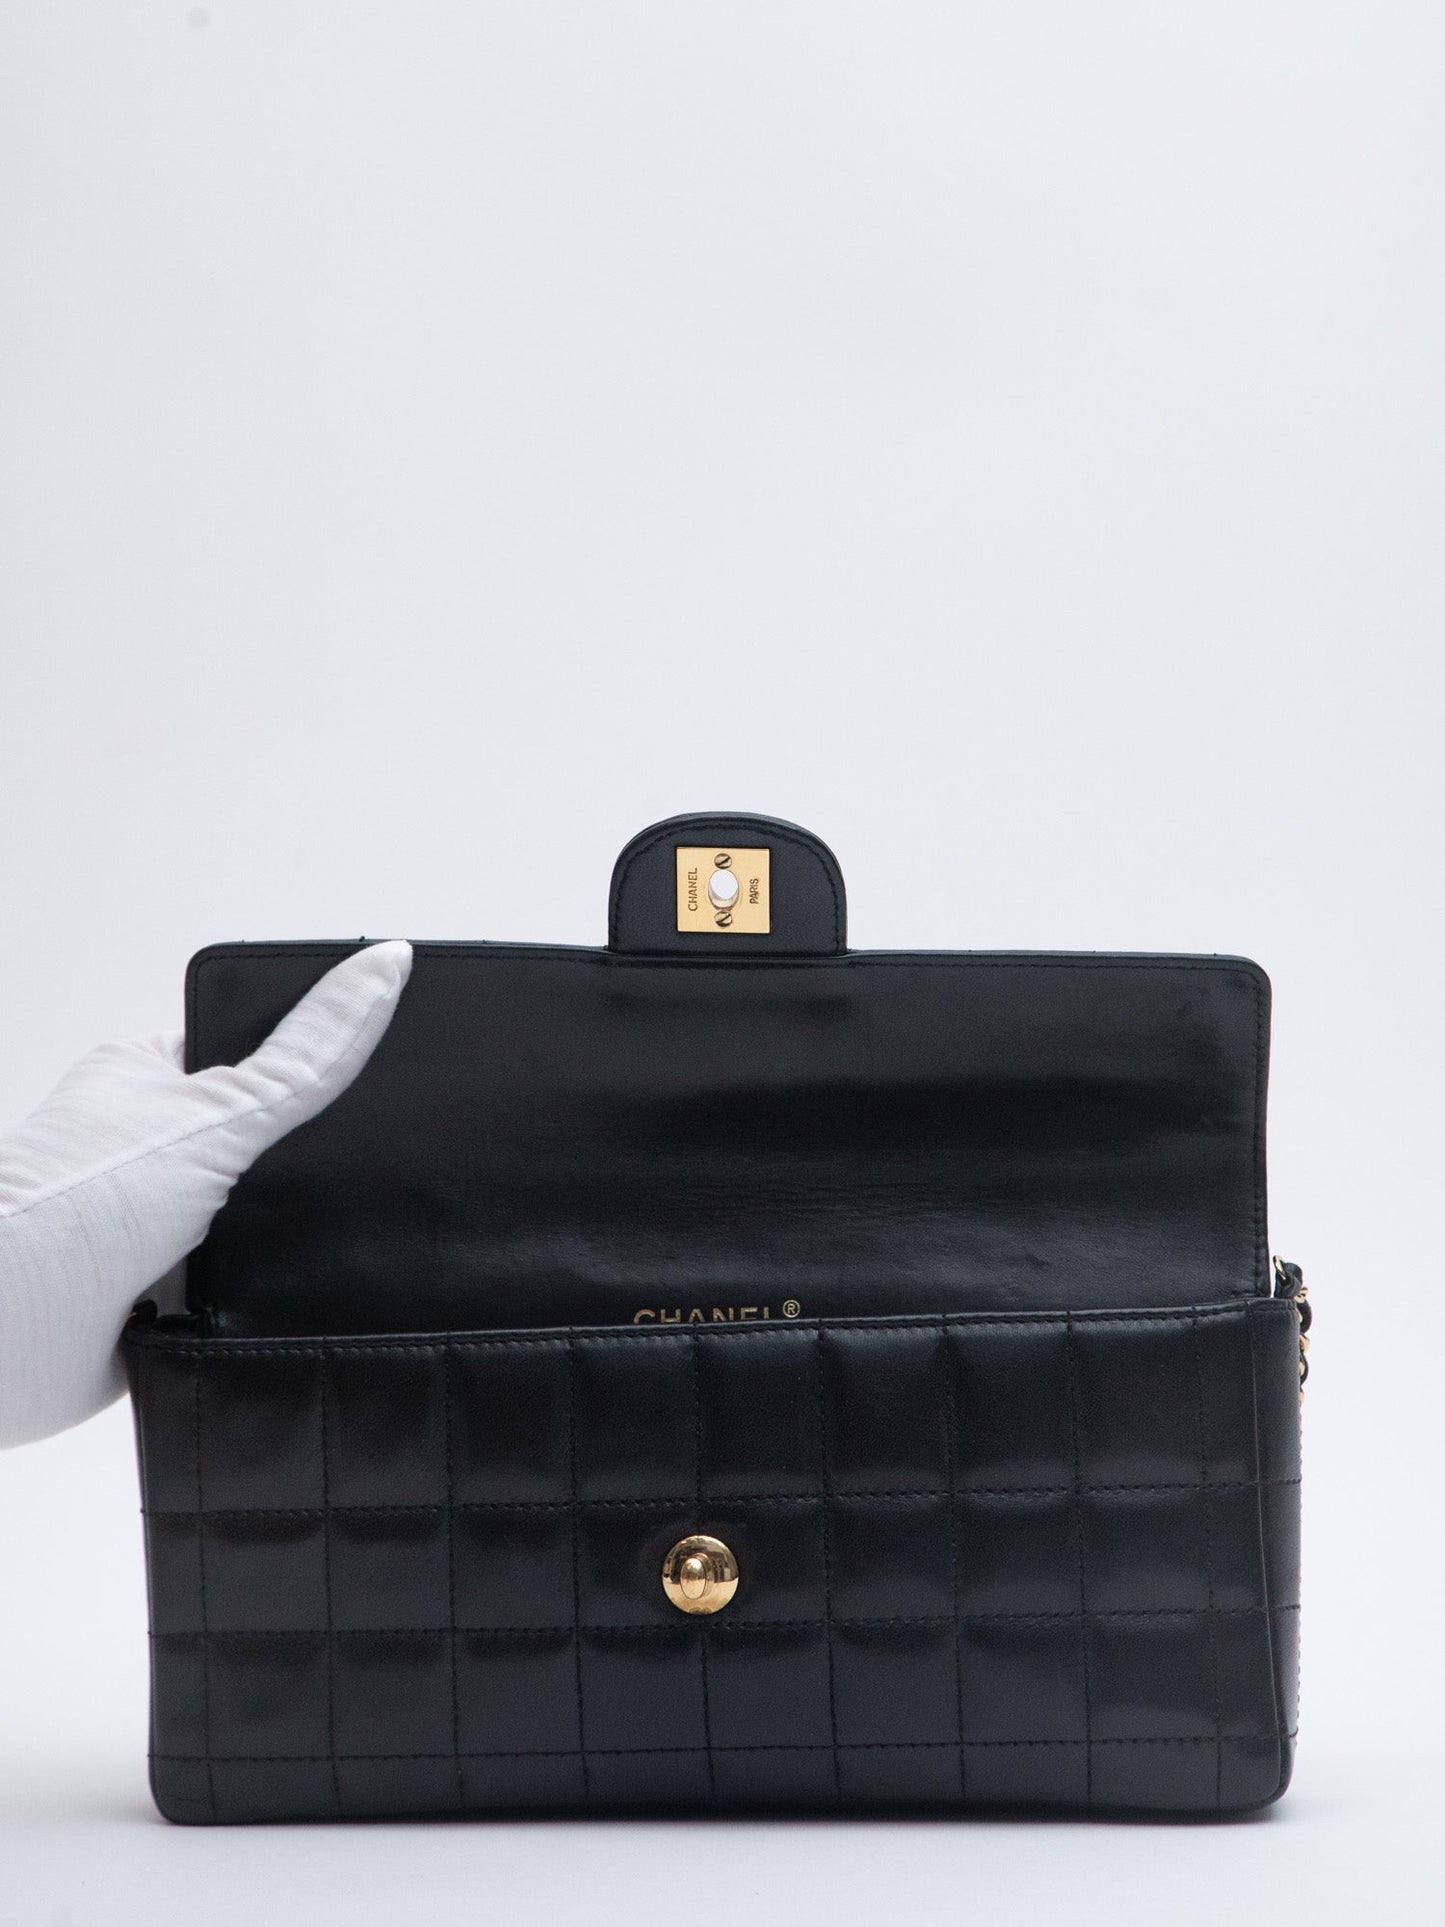 Chanel Chocolate Bar Chain Shoulder Bag Lambskin Black Gold Hardware